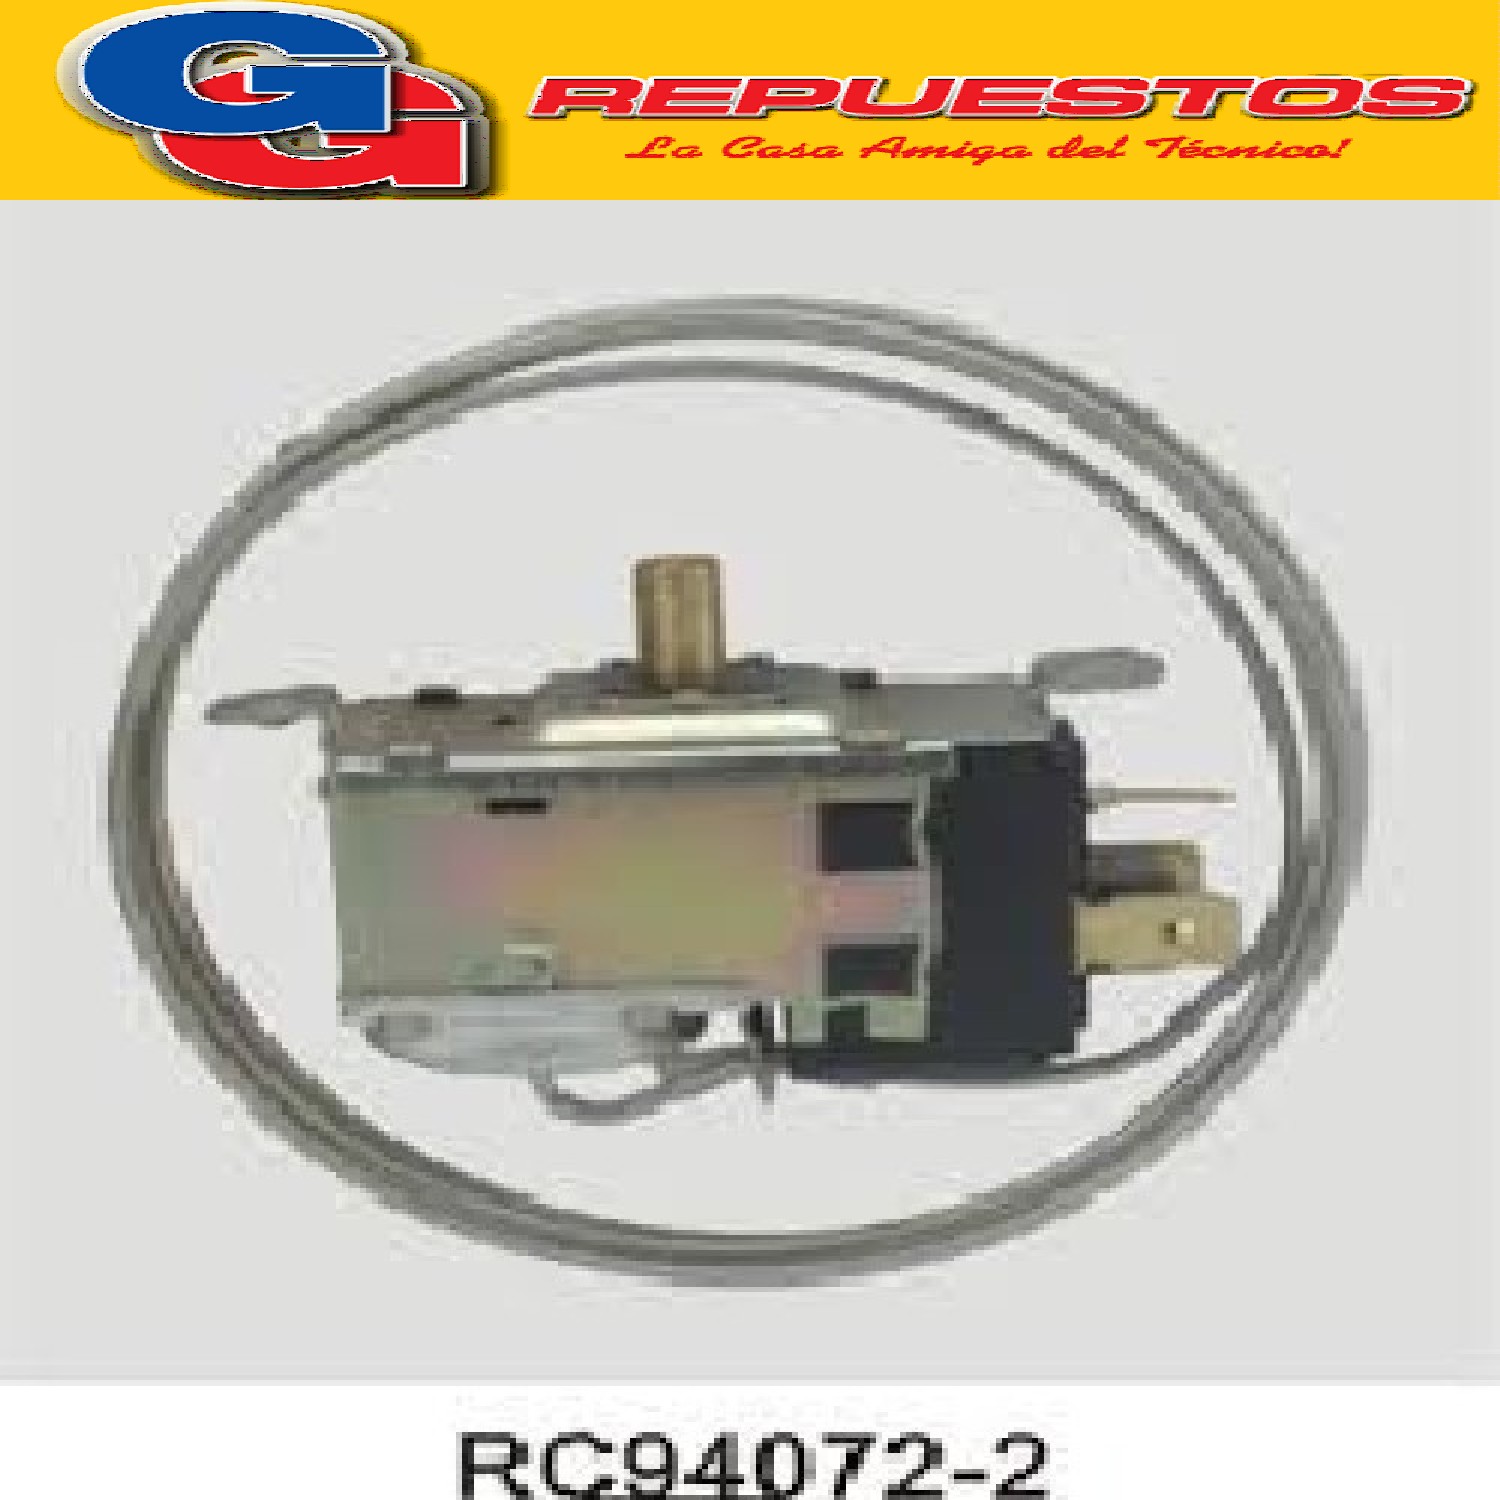 TERMOSTATO RC 94072-2S / COLUMBIA / FREEZER (+4.5-16.4_-19.2_-24) 3 CONTACTOS EJE REDONDO 2 FRIOS / 3 TERMINALES
TSV9011 - TSV9016 CAPILAR 1000 mm